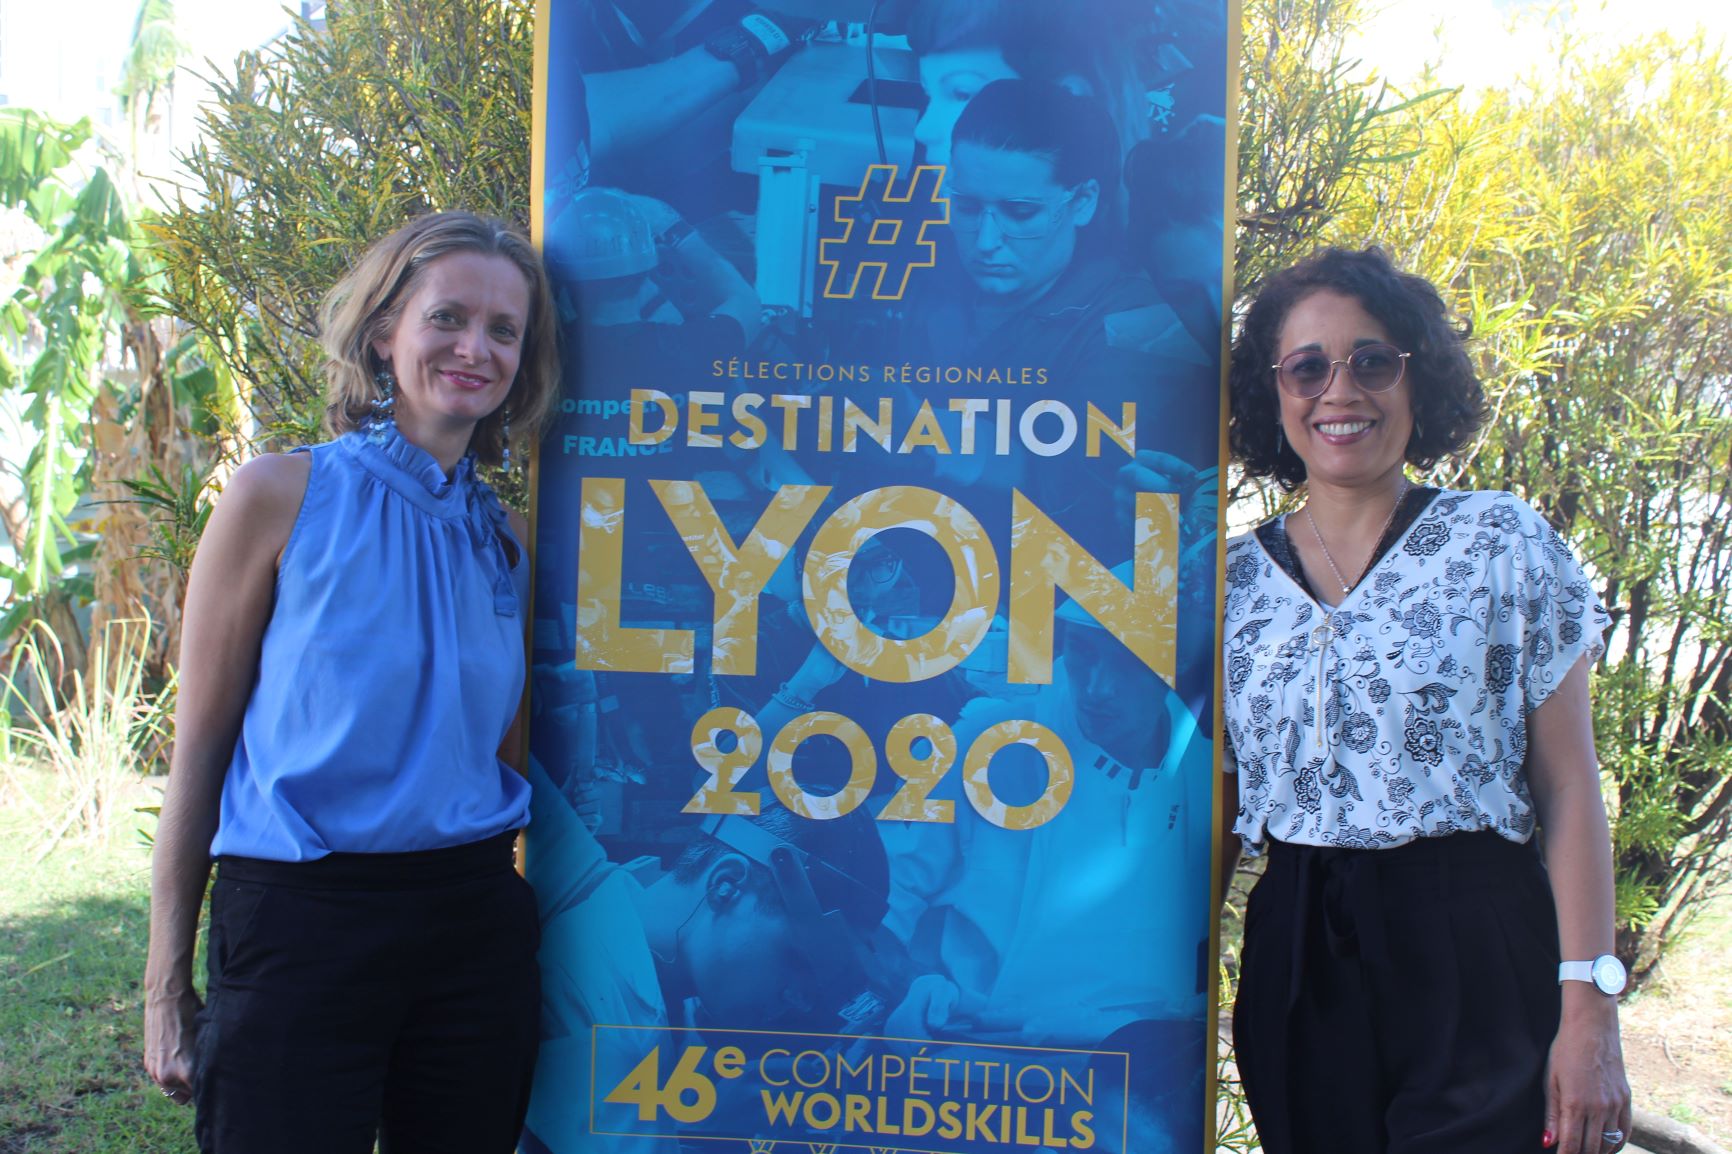 Worldskills Réunion: En route vers les finales nationales en décembre à Lyon !